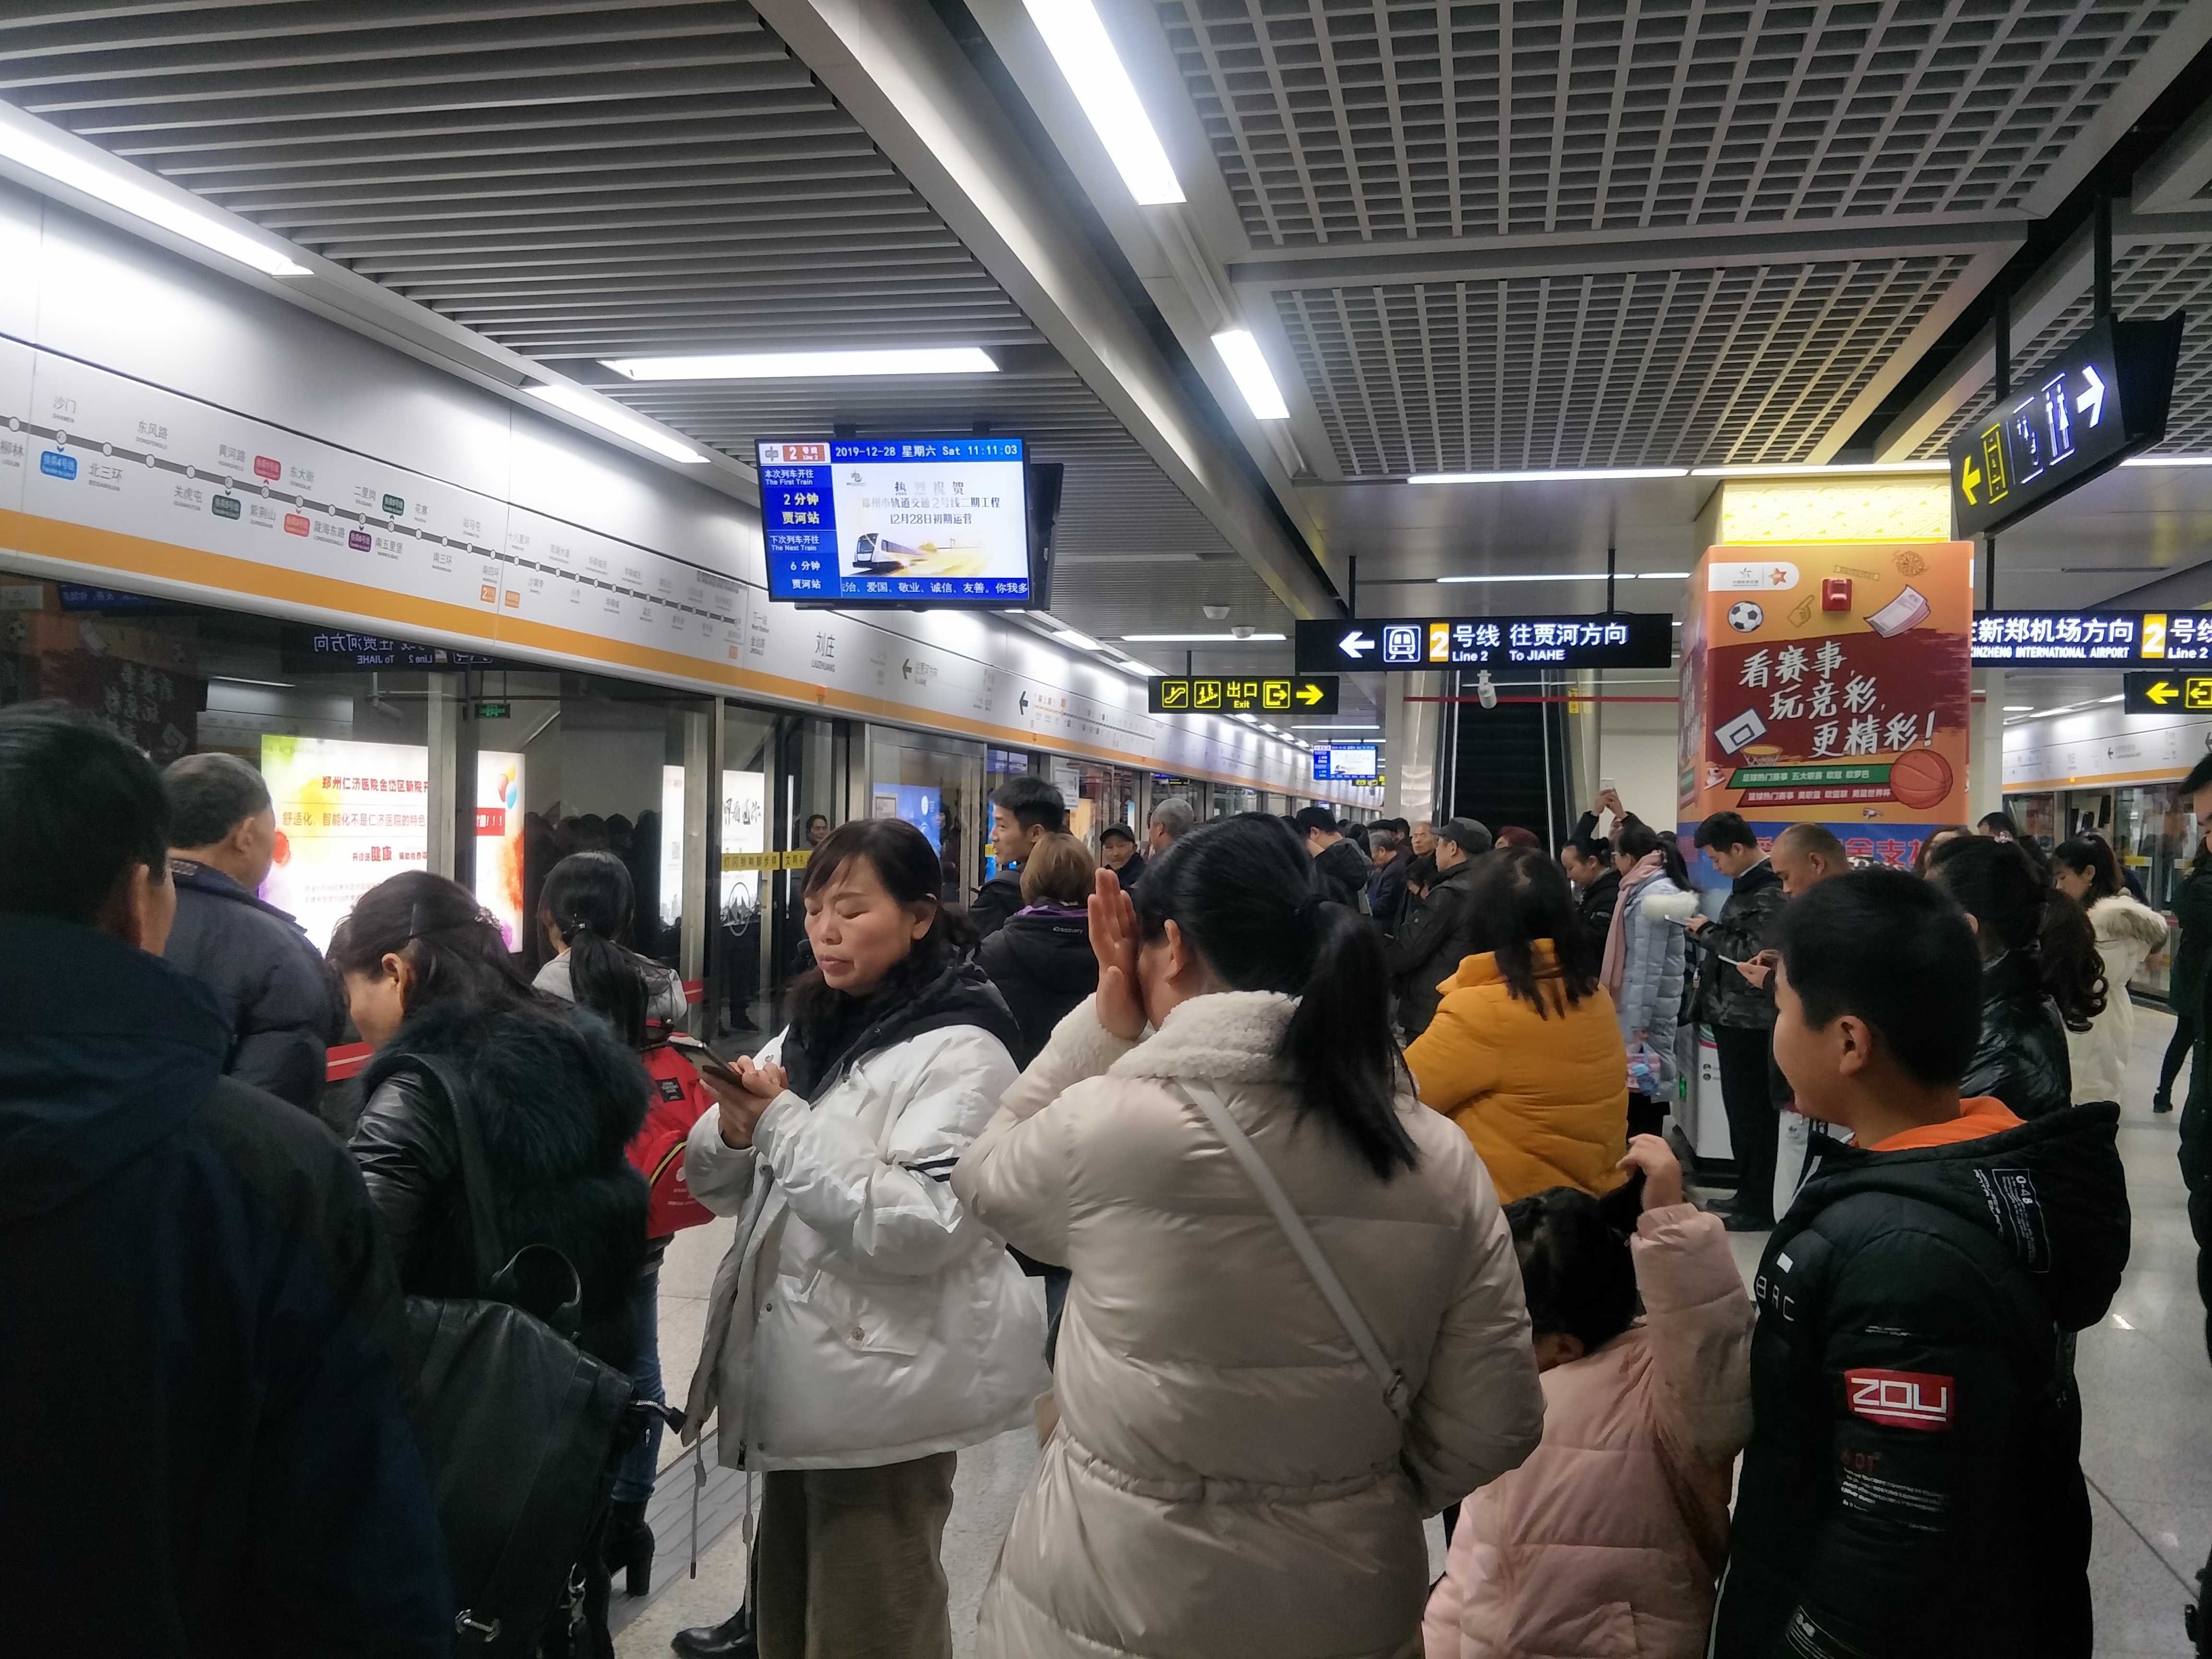 来到郑州地铁2号线刘庄站,只见在开往贾河方向一侧的站台里站满了人,